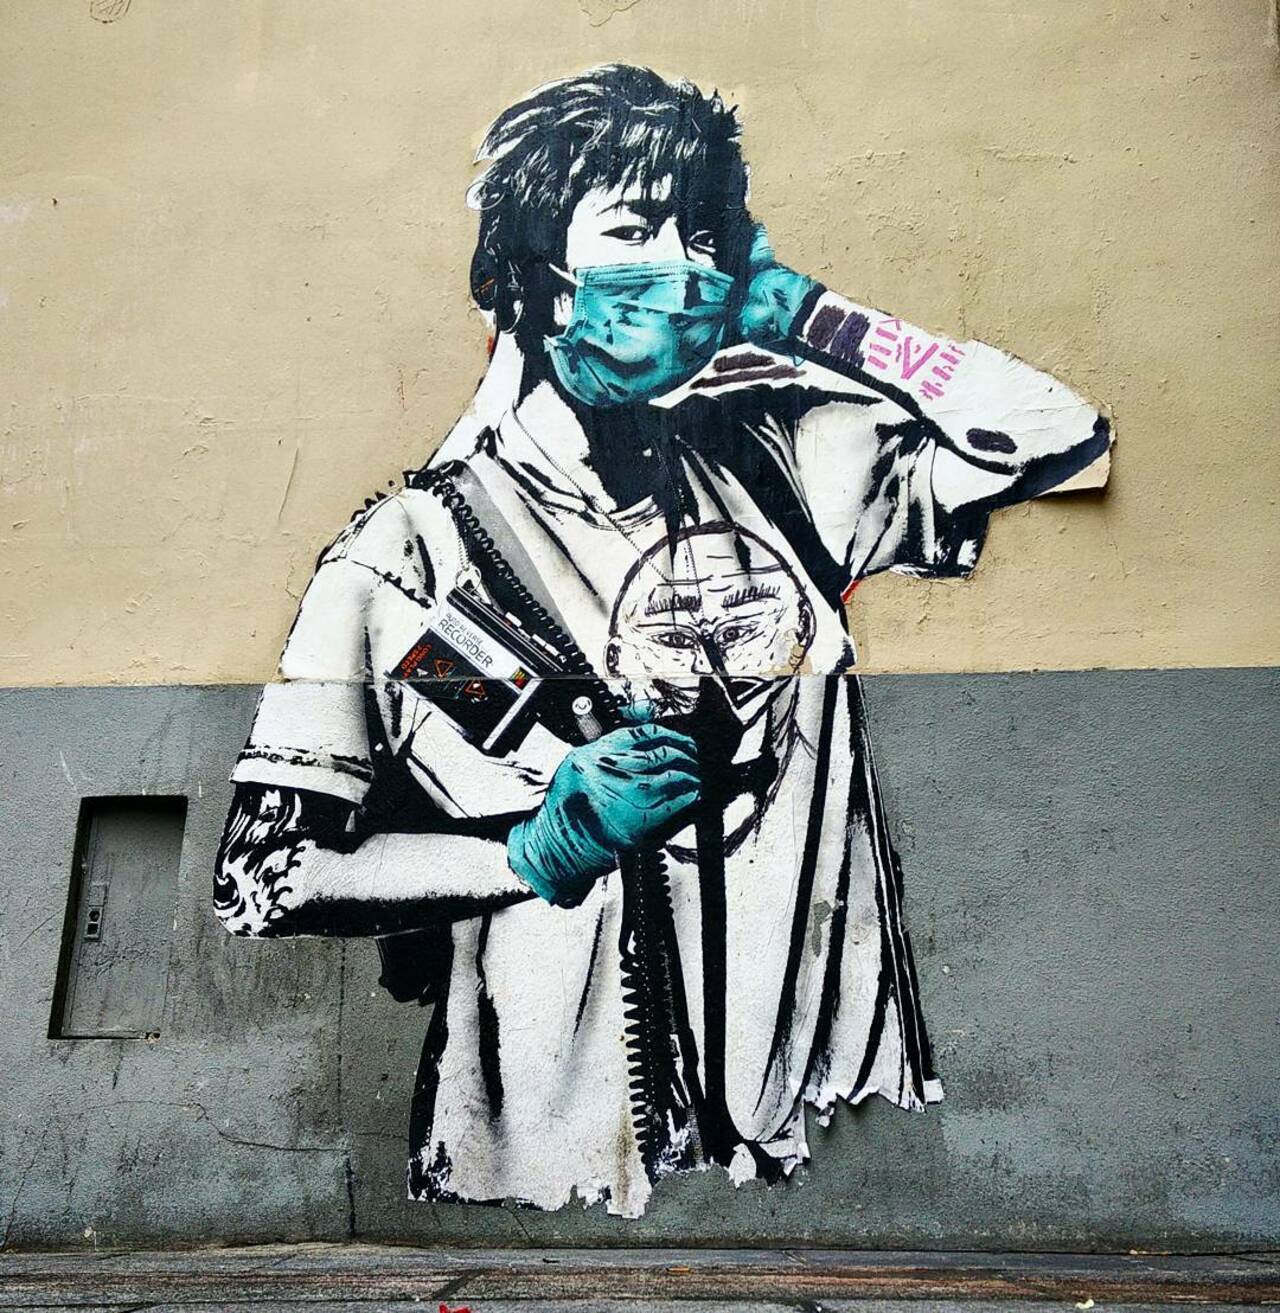 #Paris #graffiti photo by @ceky_art http://ift.tt/1W9zlet #StreetArt https://t.co/ZrEbUistjh